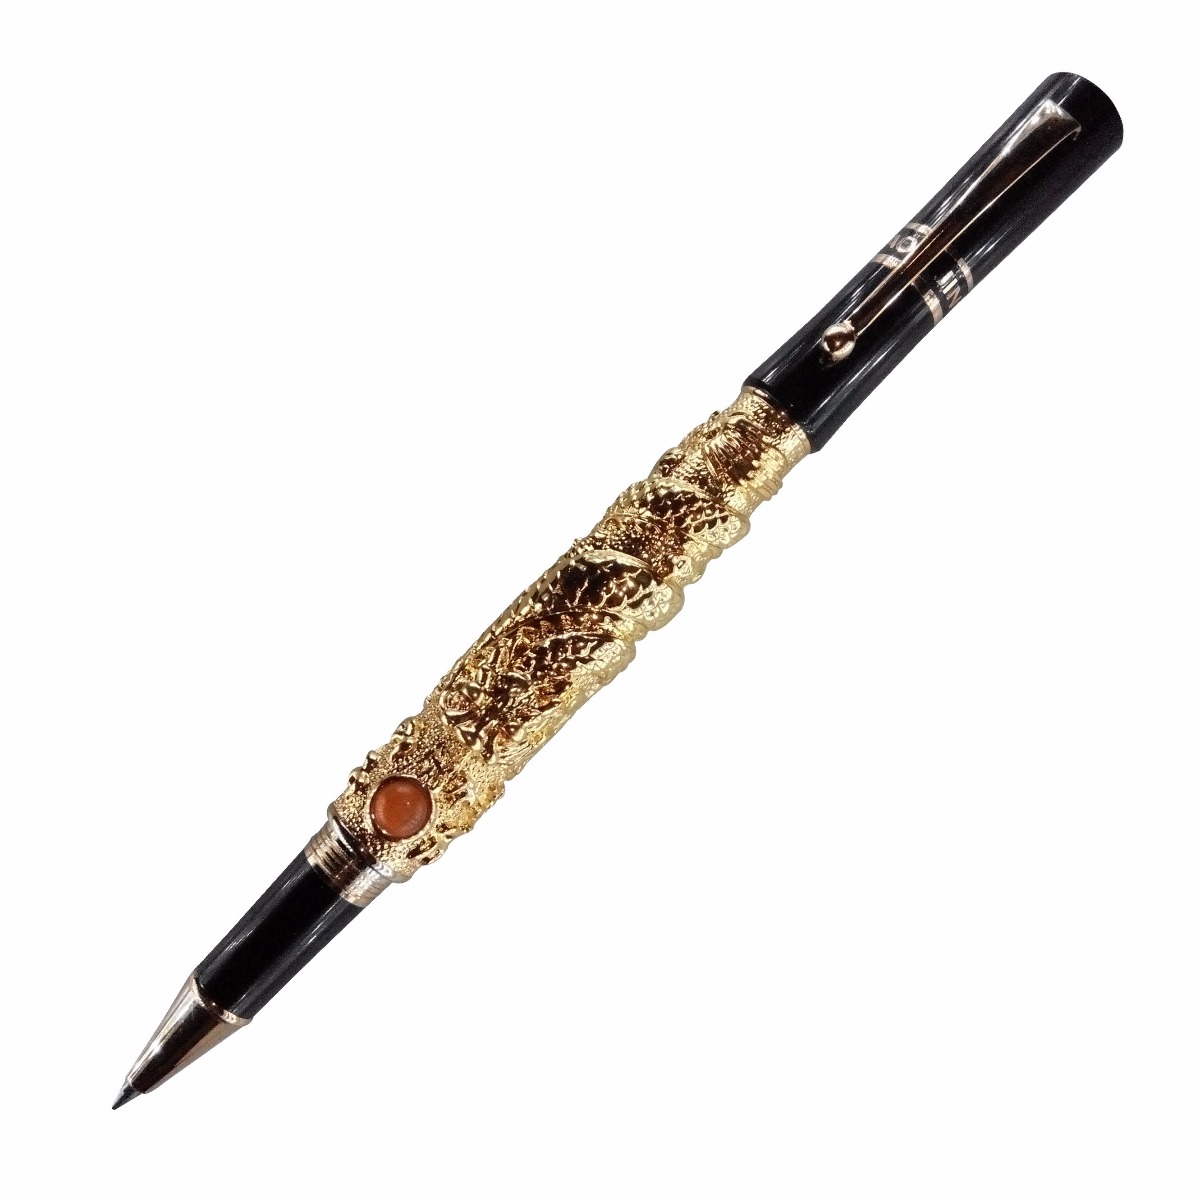 Jinhao Model No : 10515 Dragon Diamond Golden Color Body with Cap Type Roller Ball Pen Medium Tip